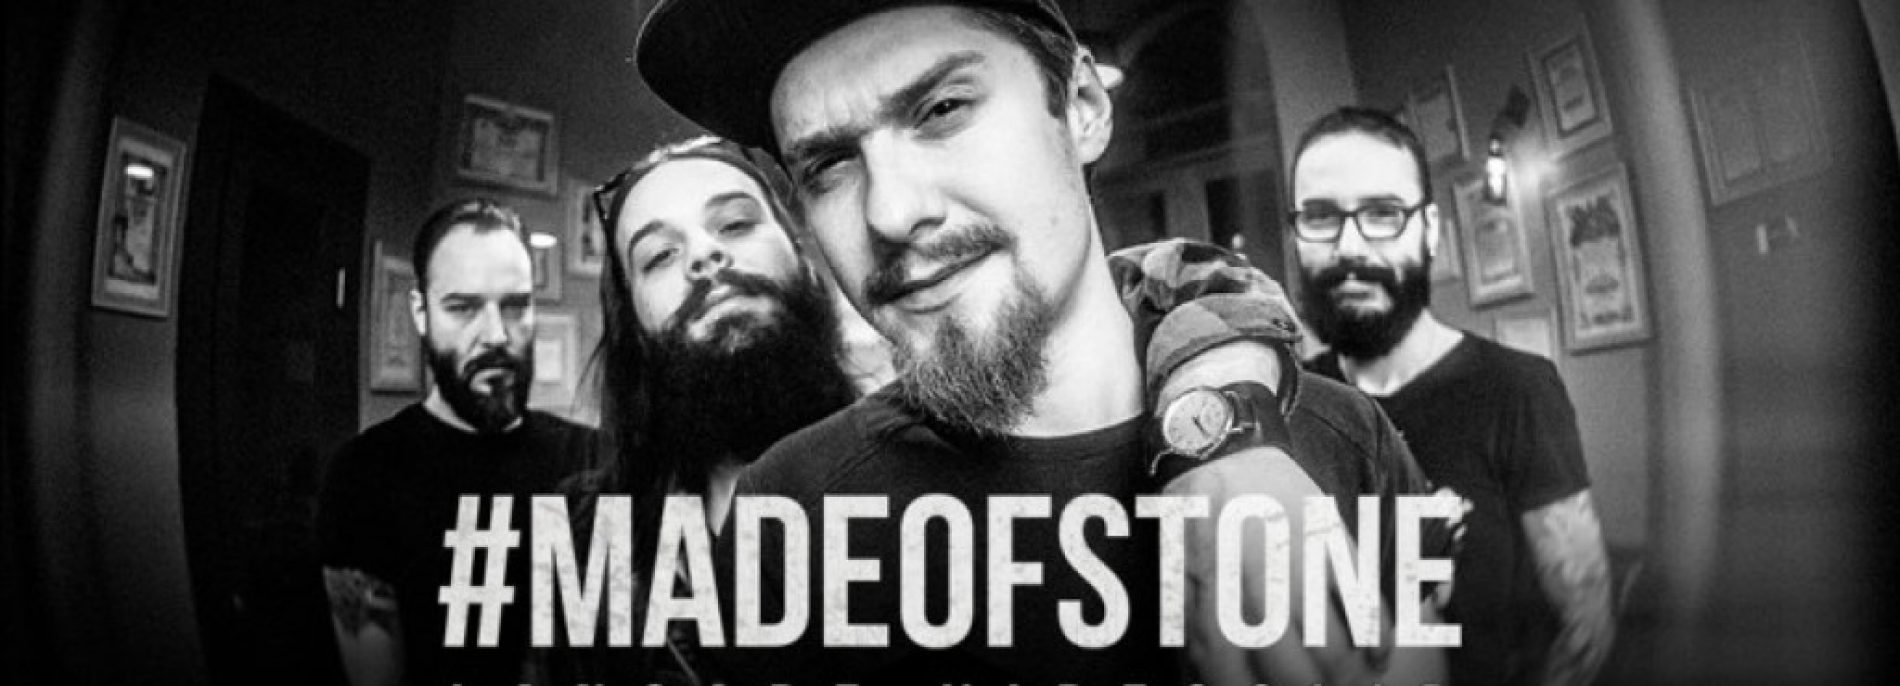 Cronică: Lansare videoclip RoadKillSoda Made Of Stone în club Fabrica